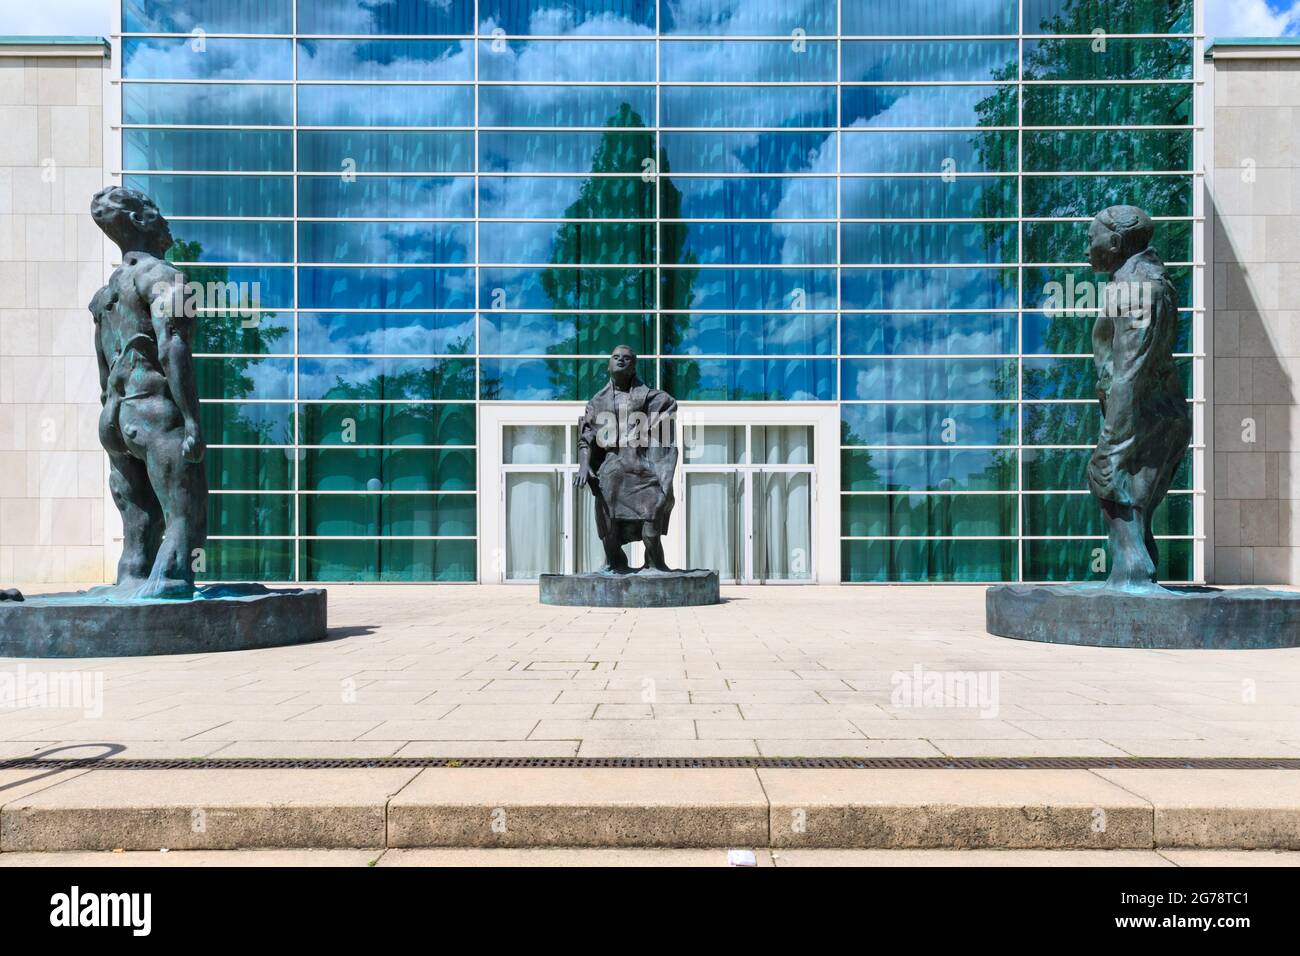 Mann im Wind I, II, III Gruppe von drei Skulpturen des Künstlers Thomas Schütte vor der Saalbau Philharmonie, Essen, Deutschland Stockfoto